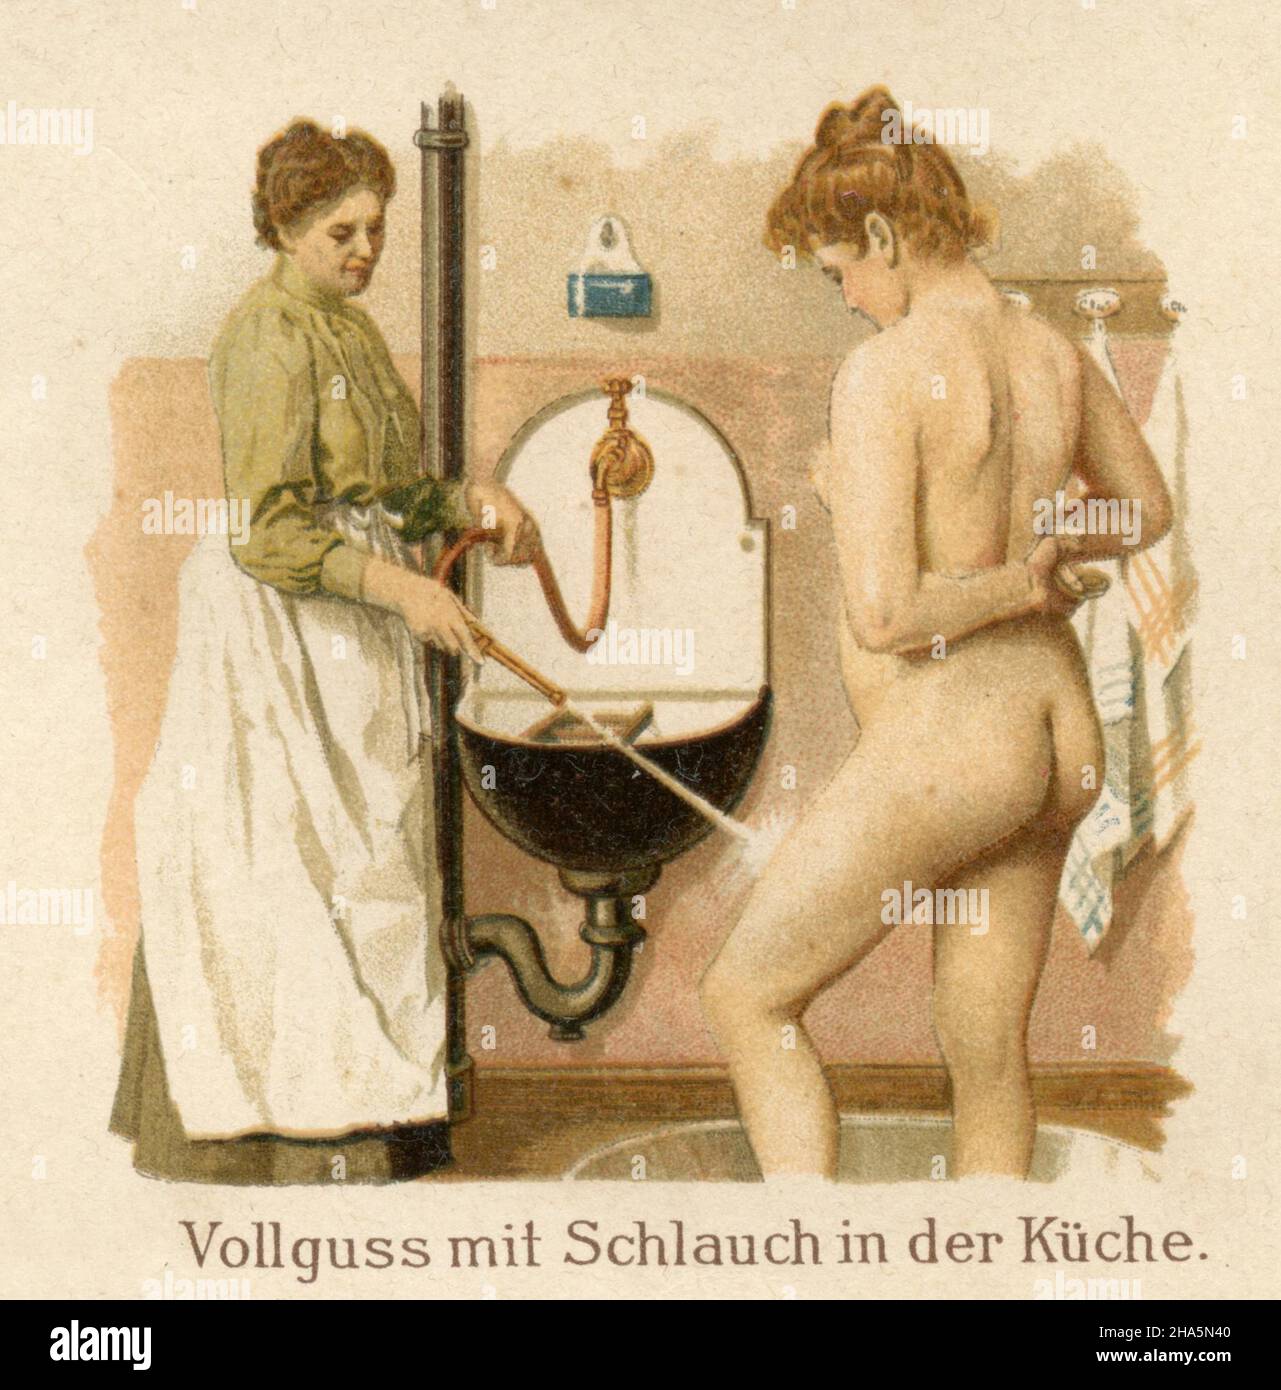 Aplicaciones de agua en enfermería: Fundición completa con manguera en la cocina , (libro de medicina, 1905) Foto de stock